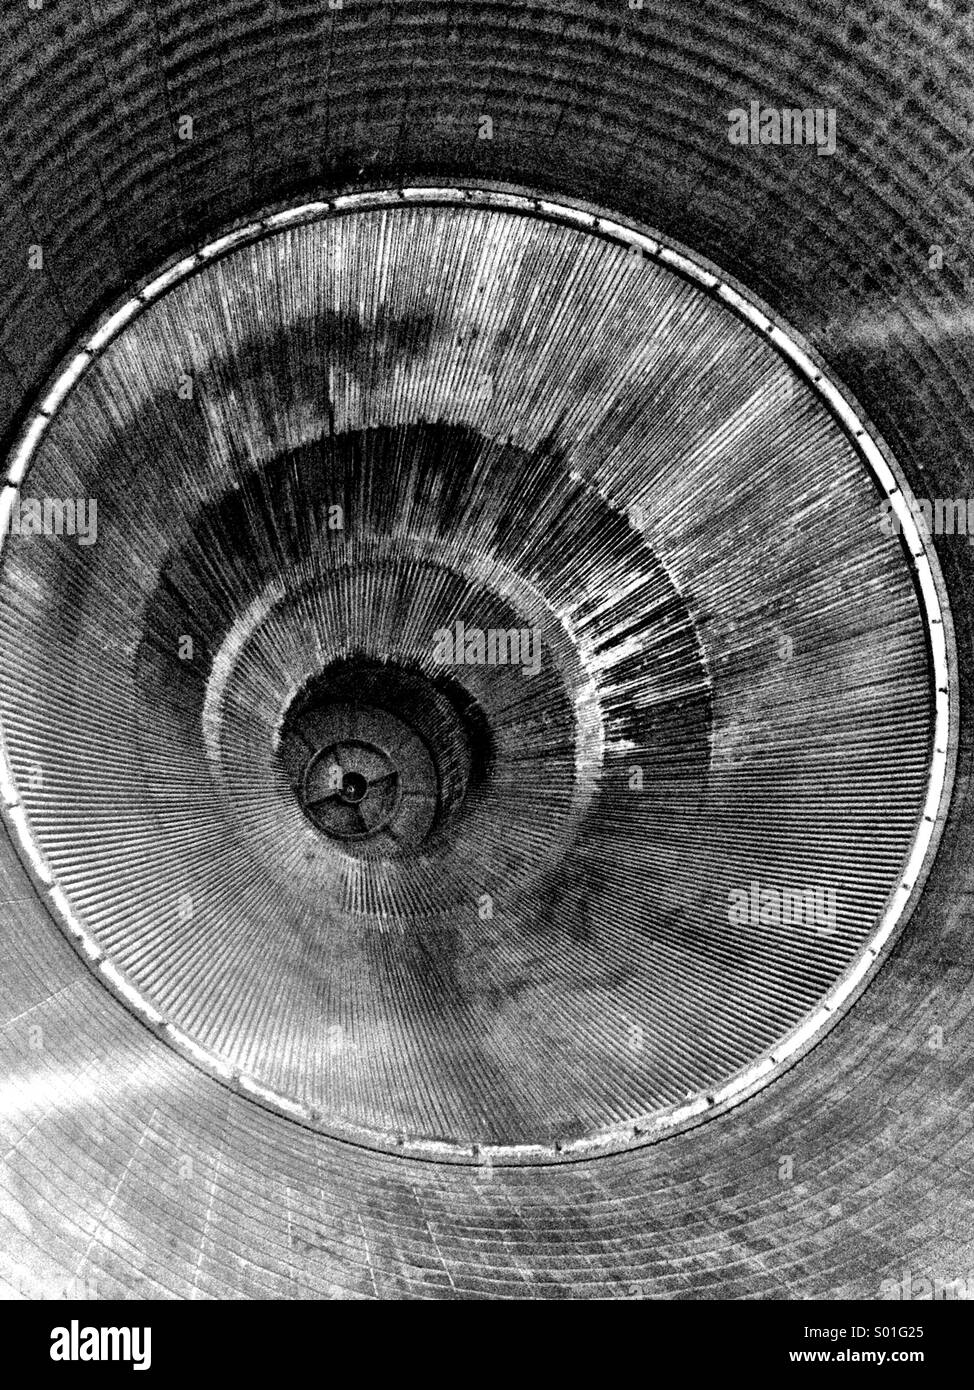 L'interno dell'ugello di un Rocketdyne F-1 motore come visto su un Saturn V luna razzo. Foto Stock